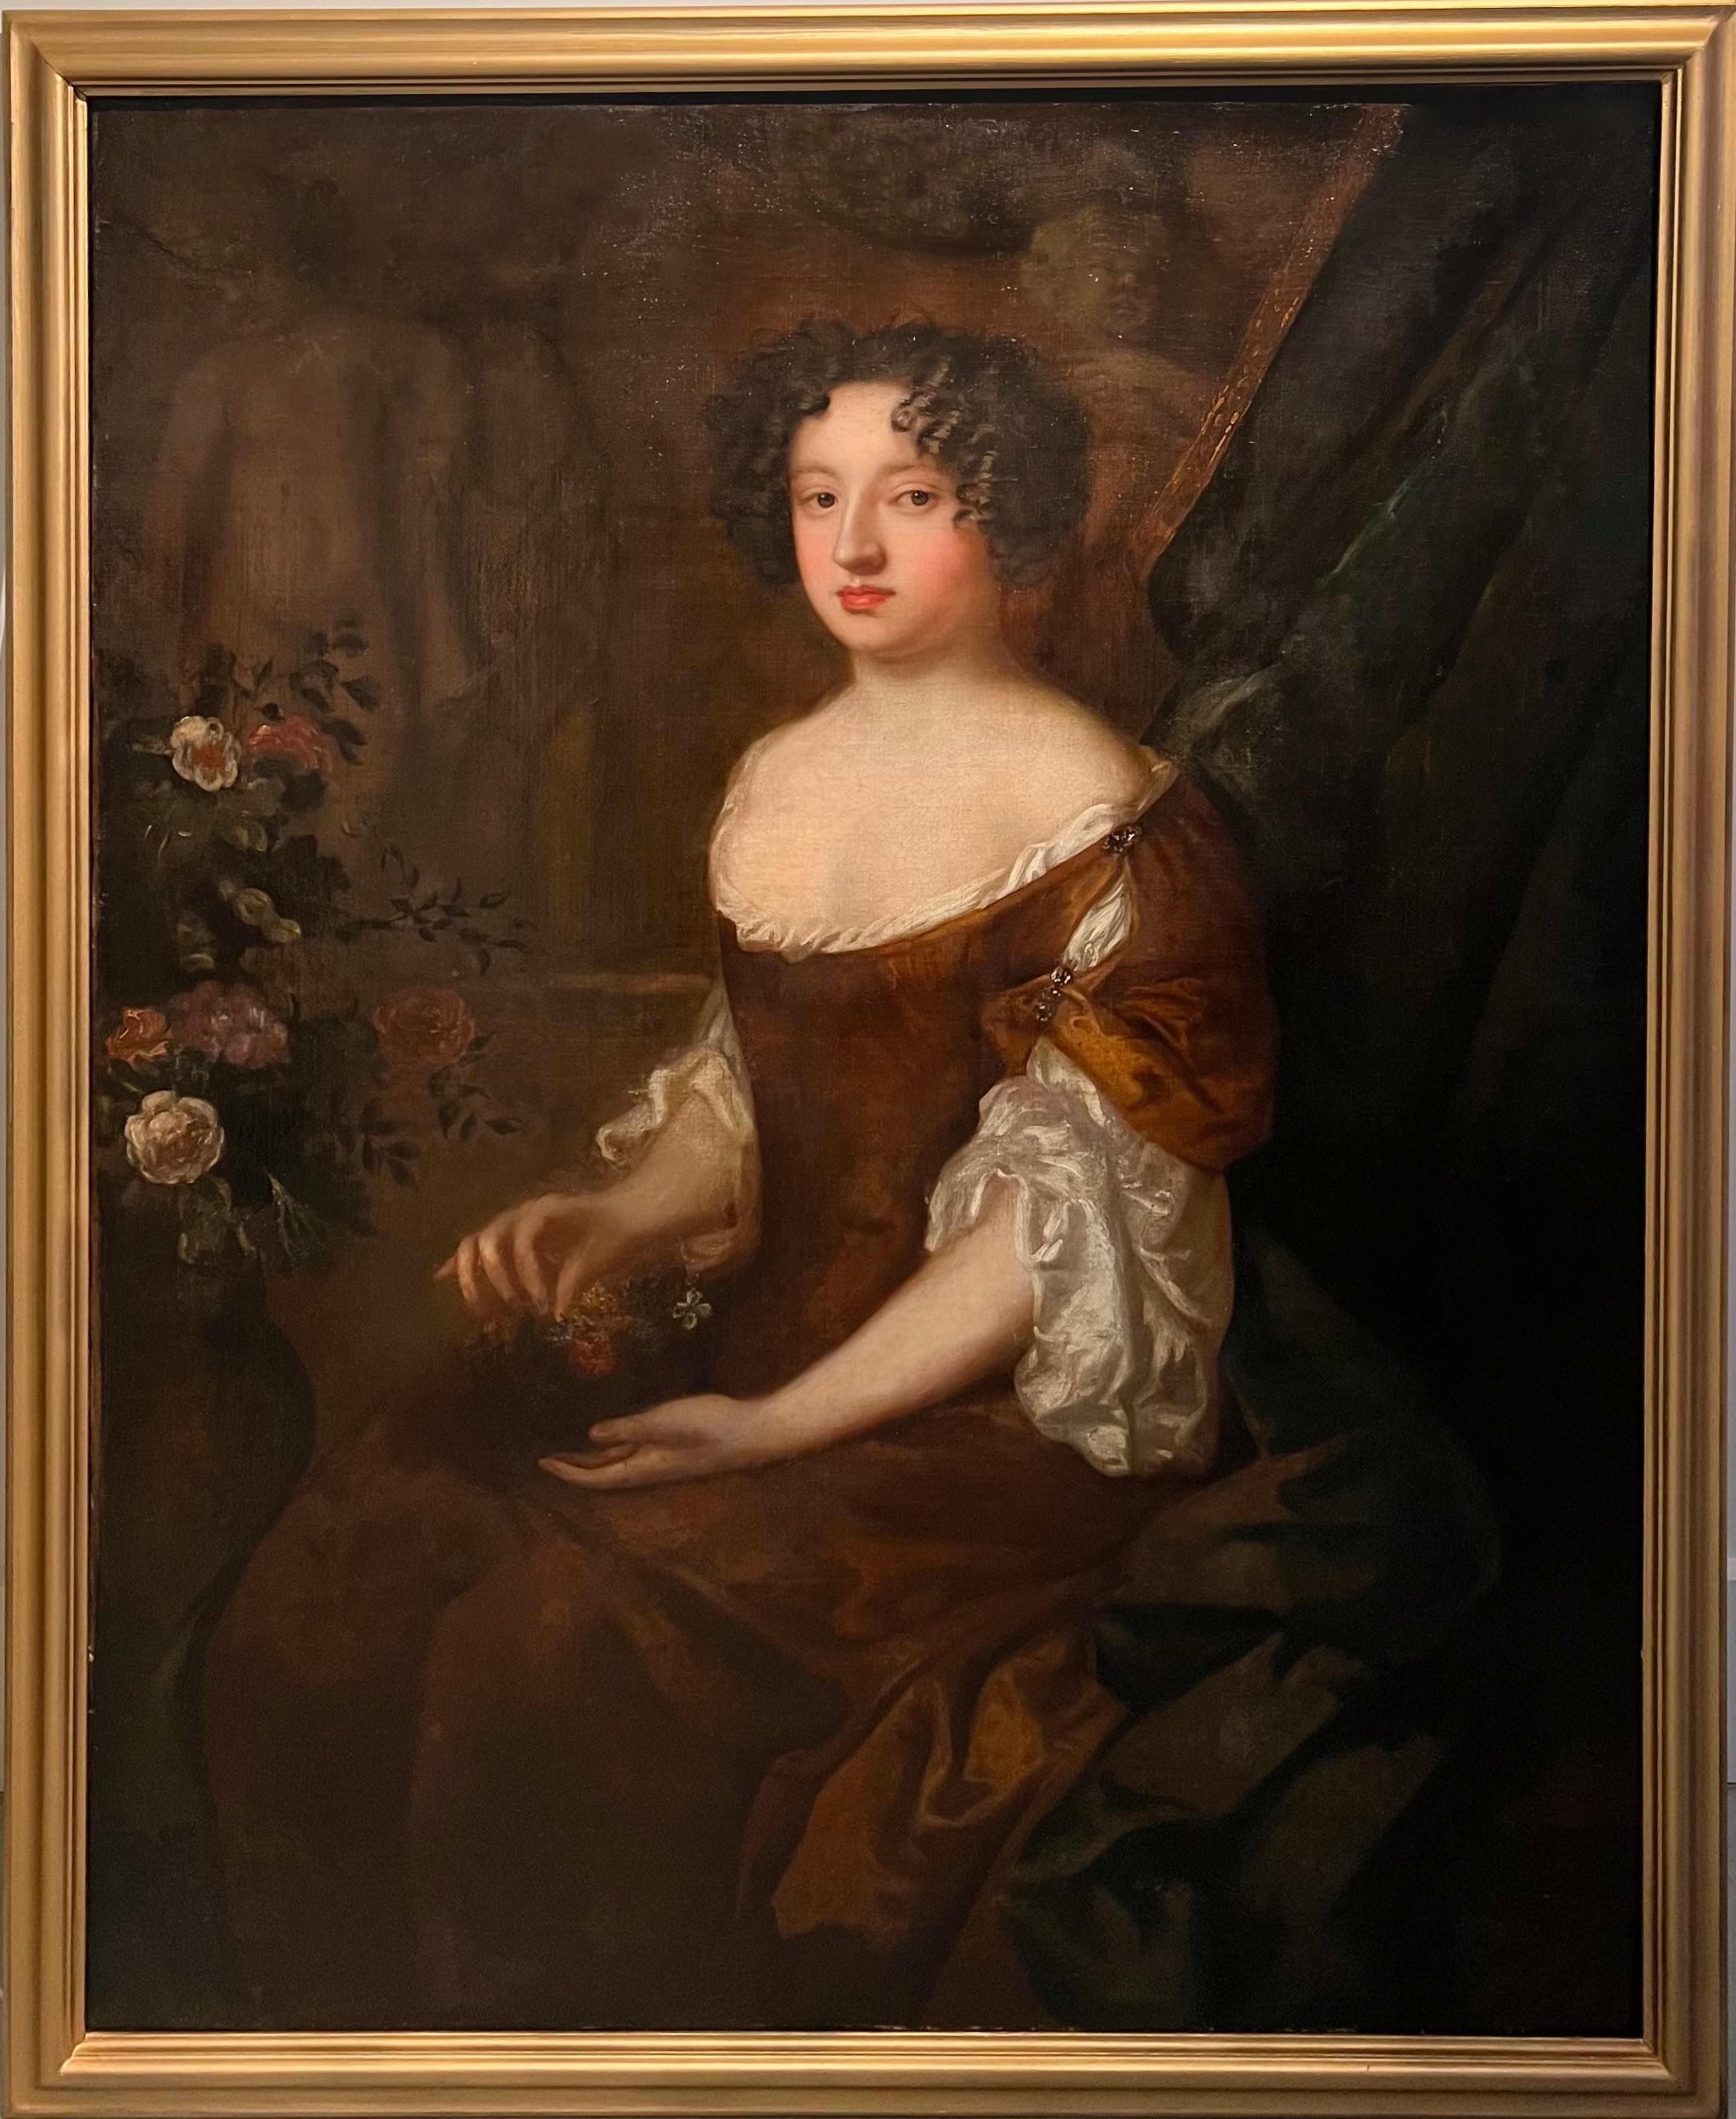 Sir Godfrey Kneller Figurative Painting – Großes Porträt einer adligen Dame aus dem 17. Jahrhundert – Schloss Caufeild – Godfrey Kneller